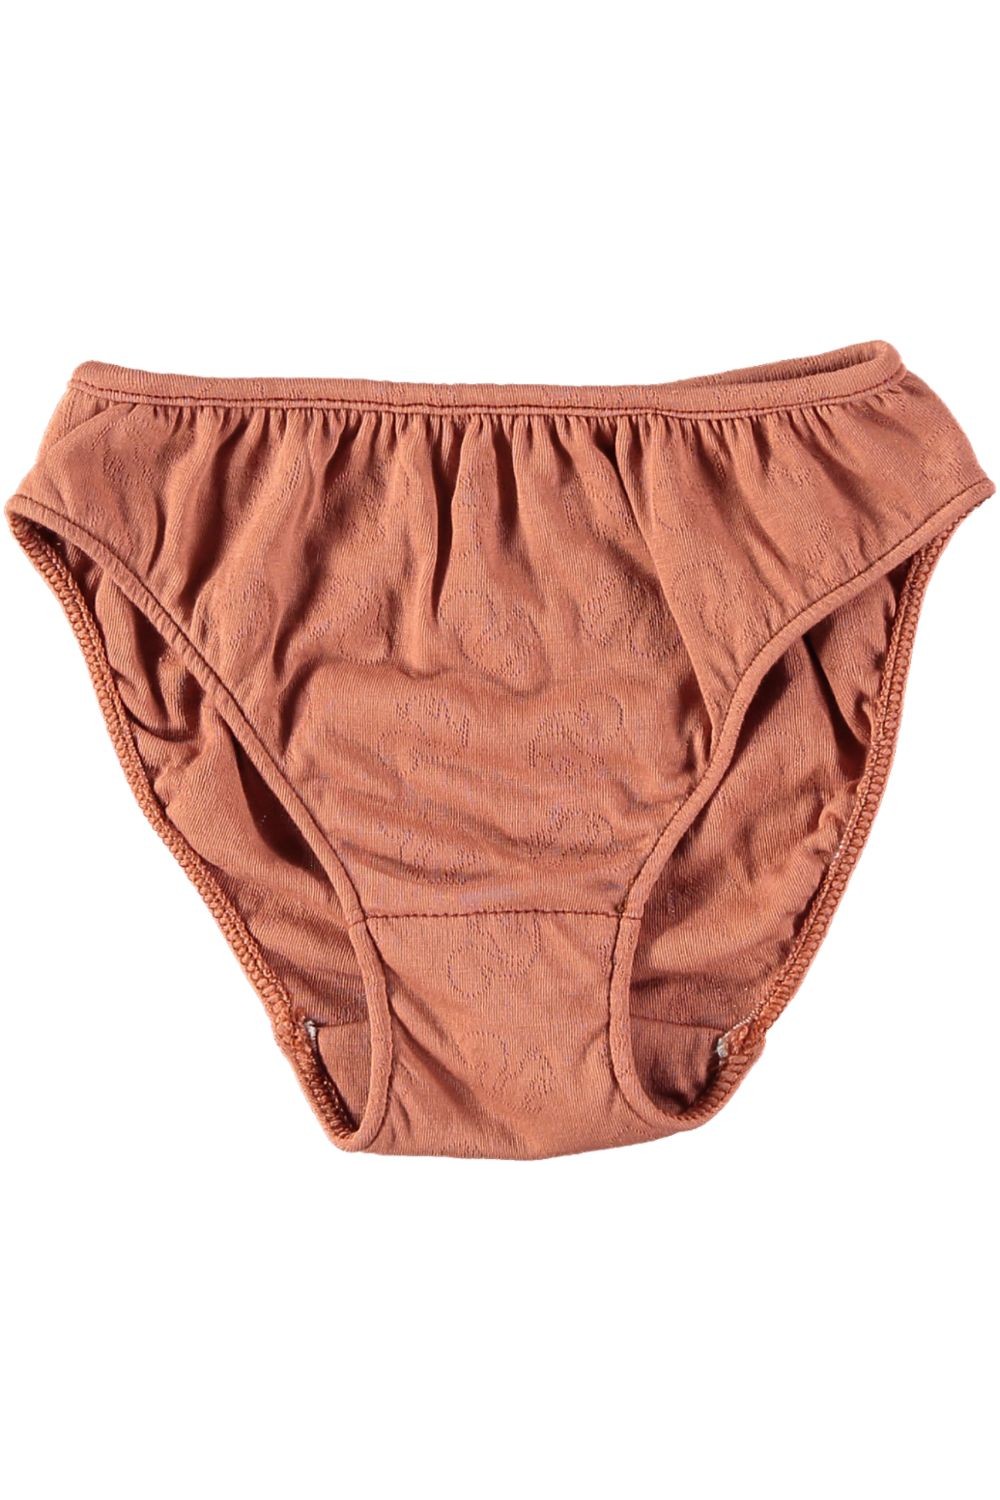 Girls Underwear and Girls Briefs